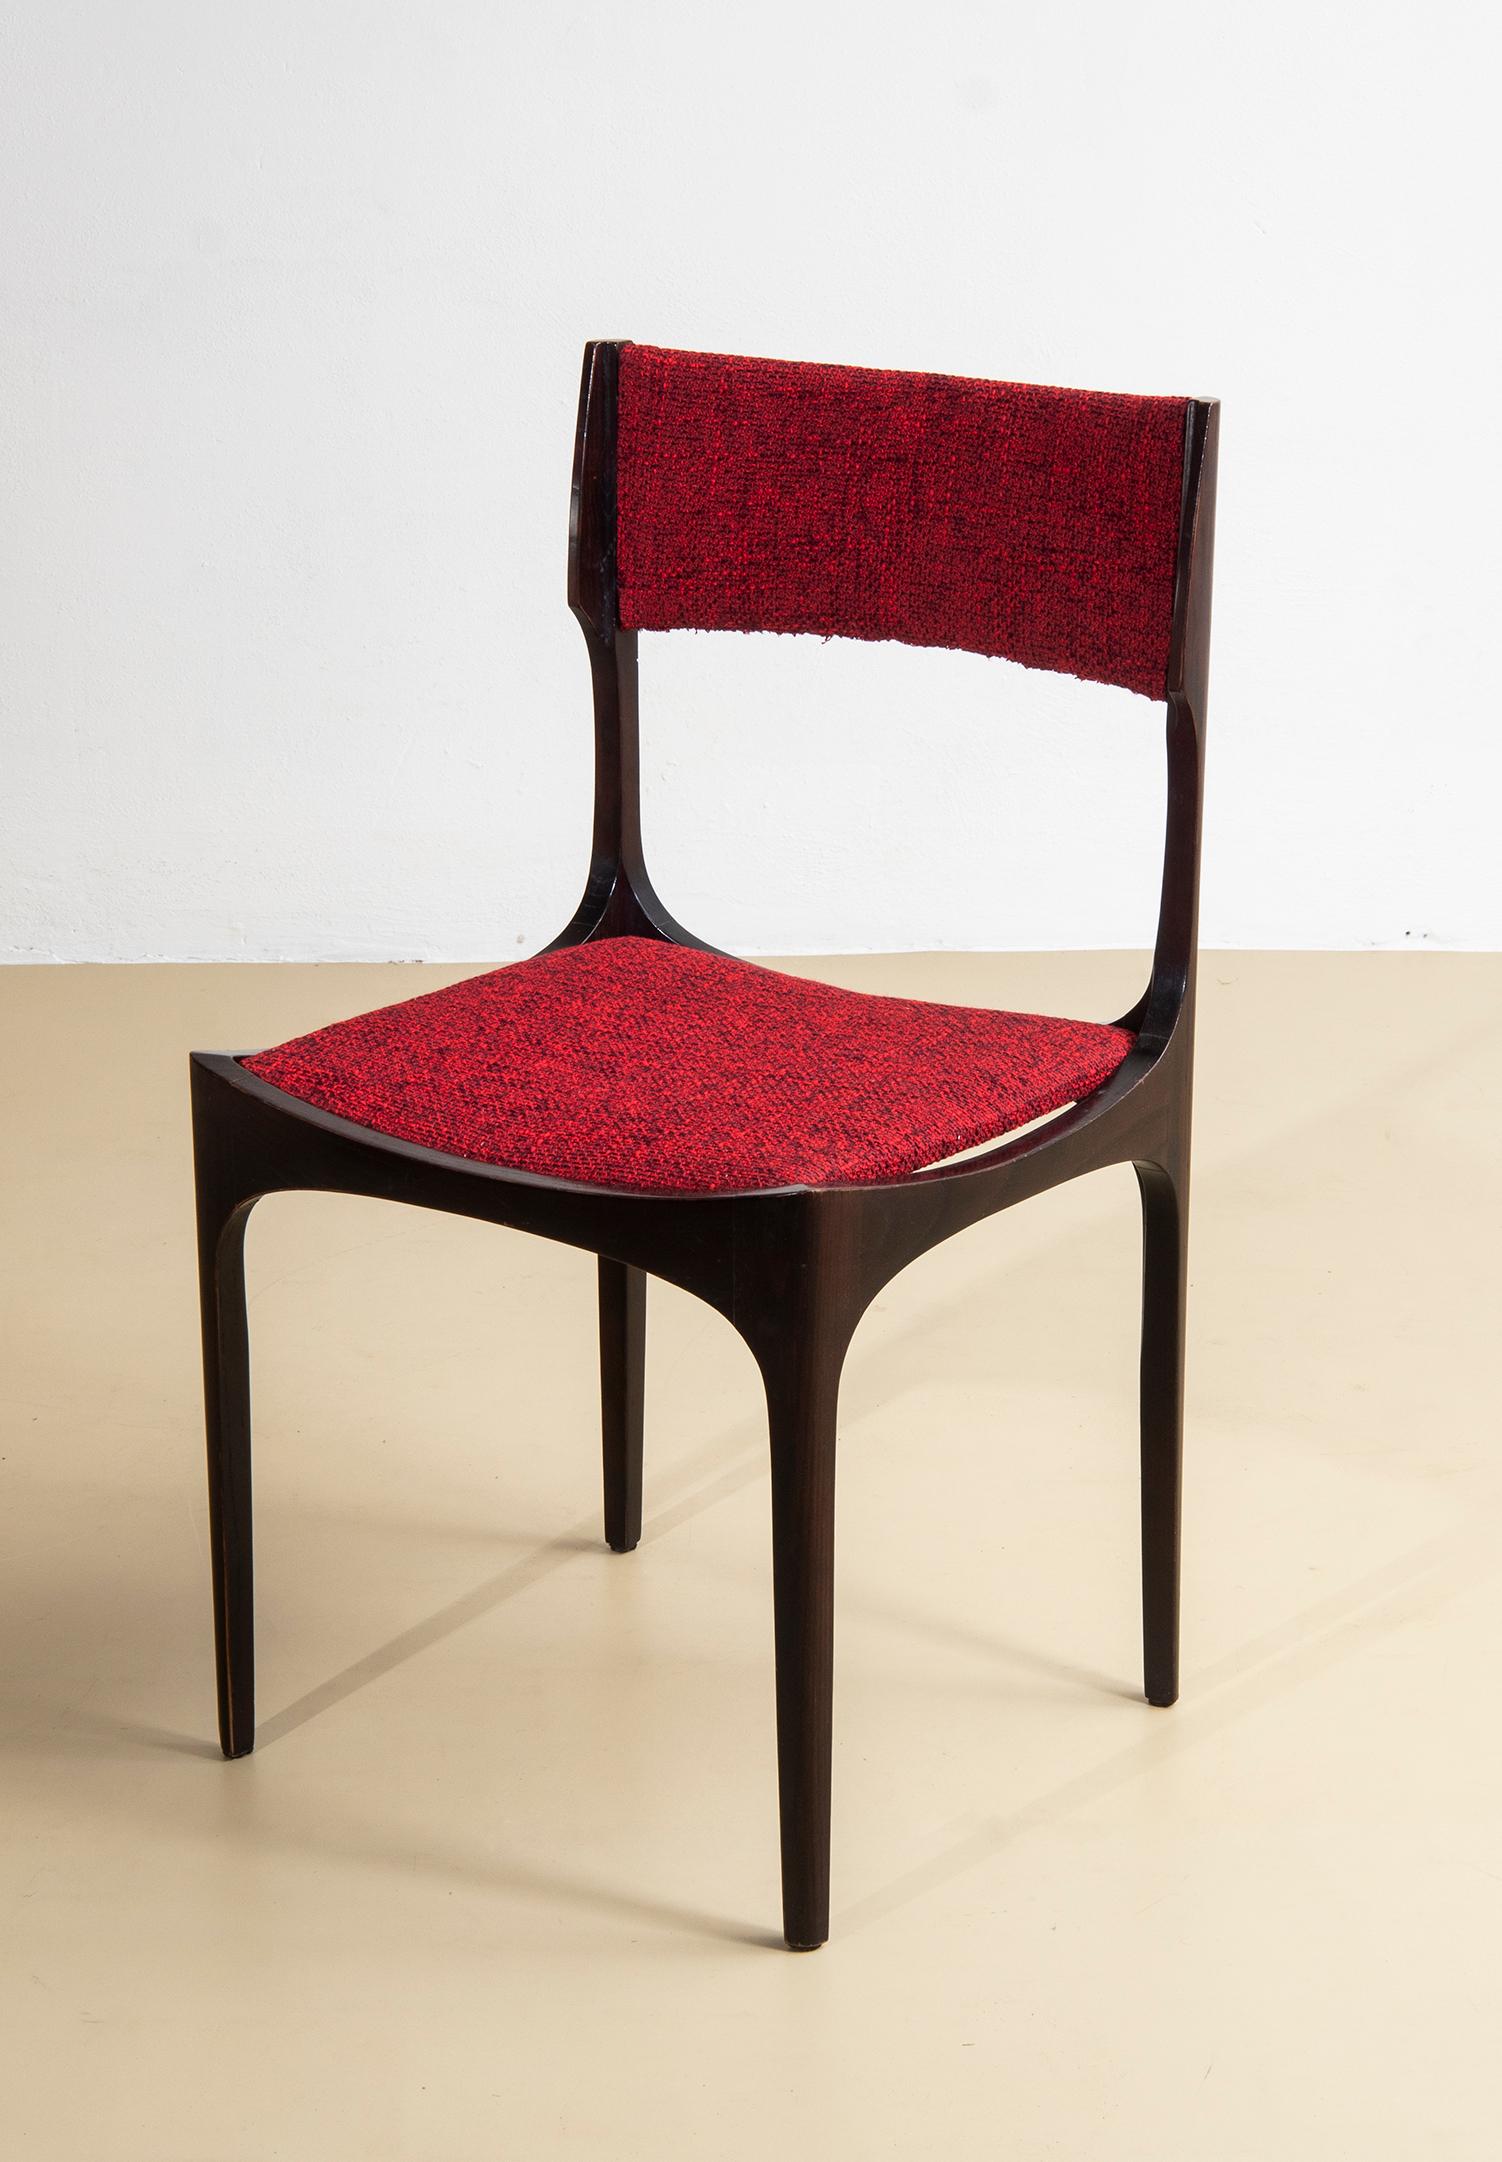 Set di quattro sedie modello ‘Elisabetta’ in legno con impiallacciato di palissandro disegnate da Giuseppe Gibelli negli anni 60 per Sormani. Rivestite in stoffa mélange rossa. 

Bibliografia:
Rivista dell'Arredamento n. 102
